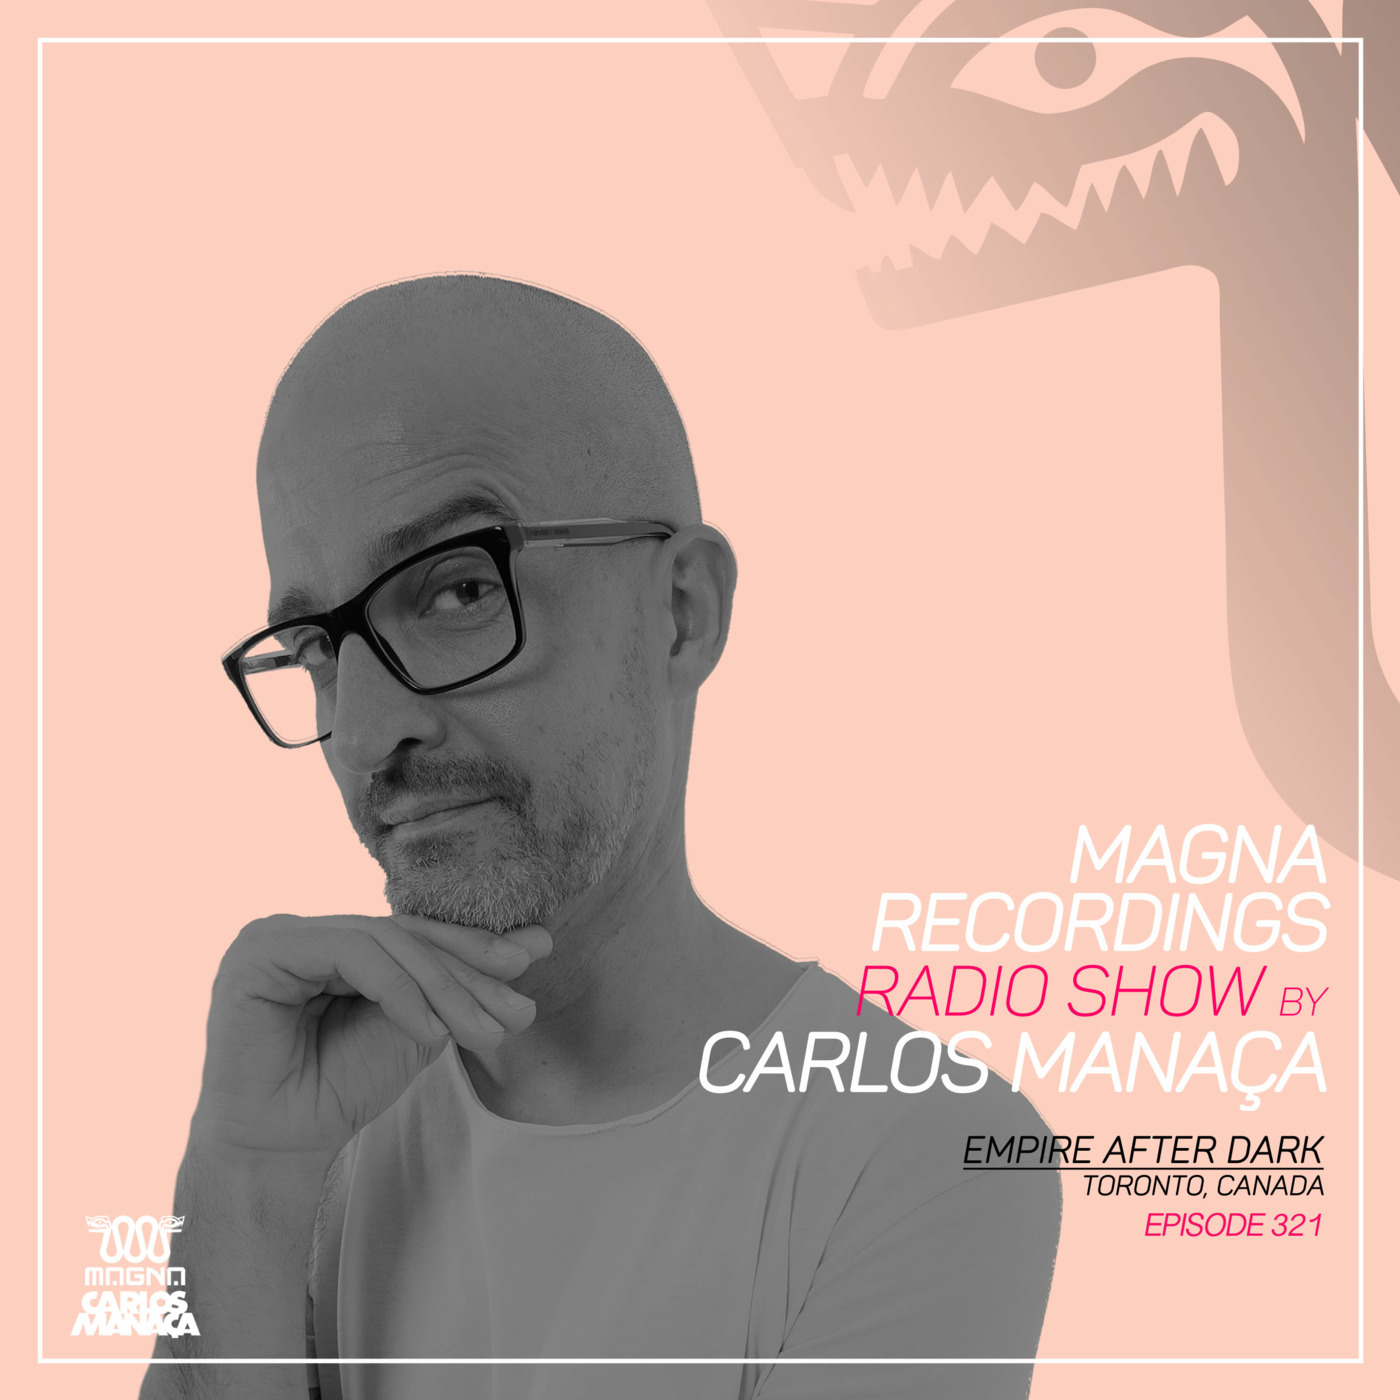 Episode 144: Magna Recordings Radio Show by Carlos Manaca 321 | Empire After Dark [Toronto] Canada